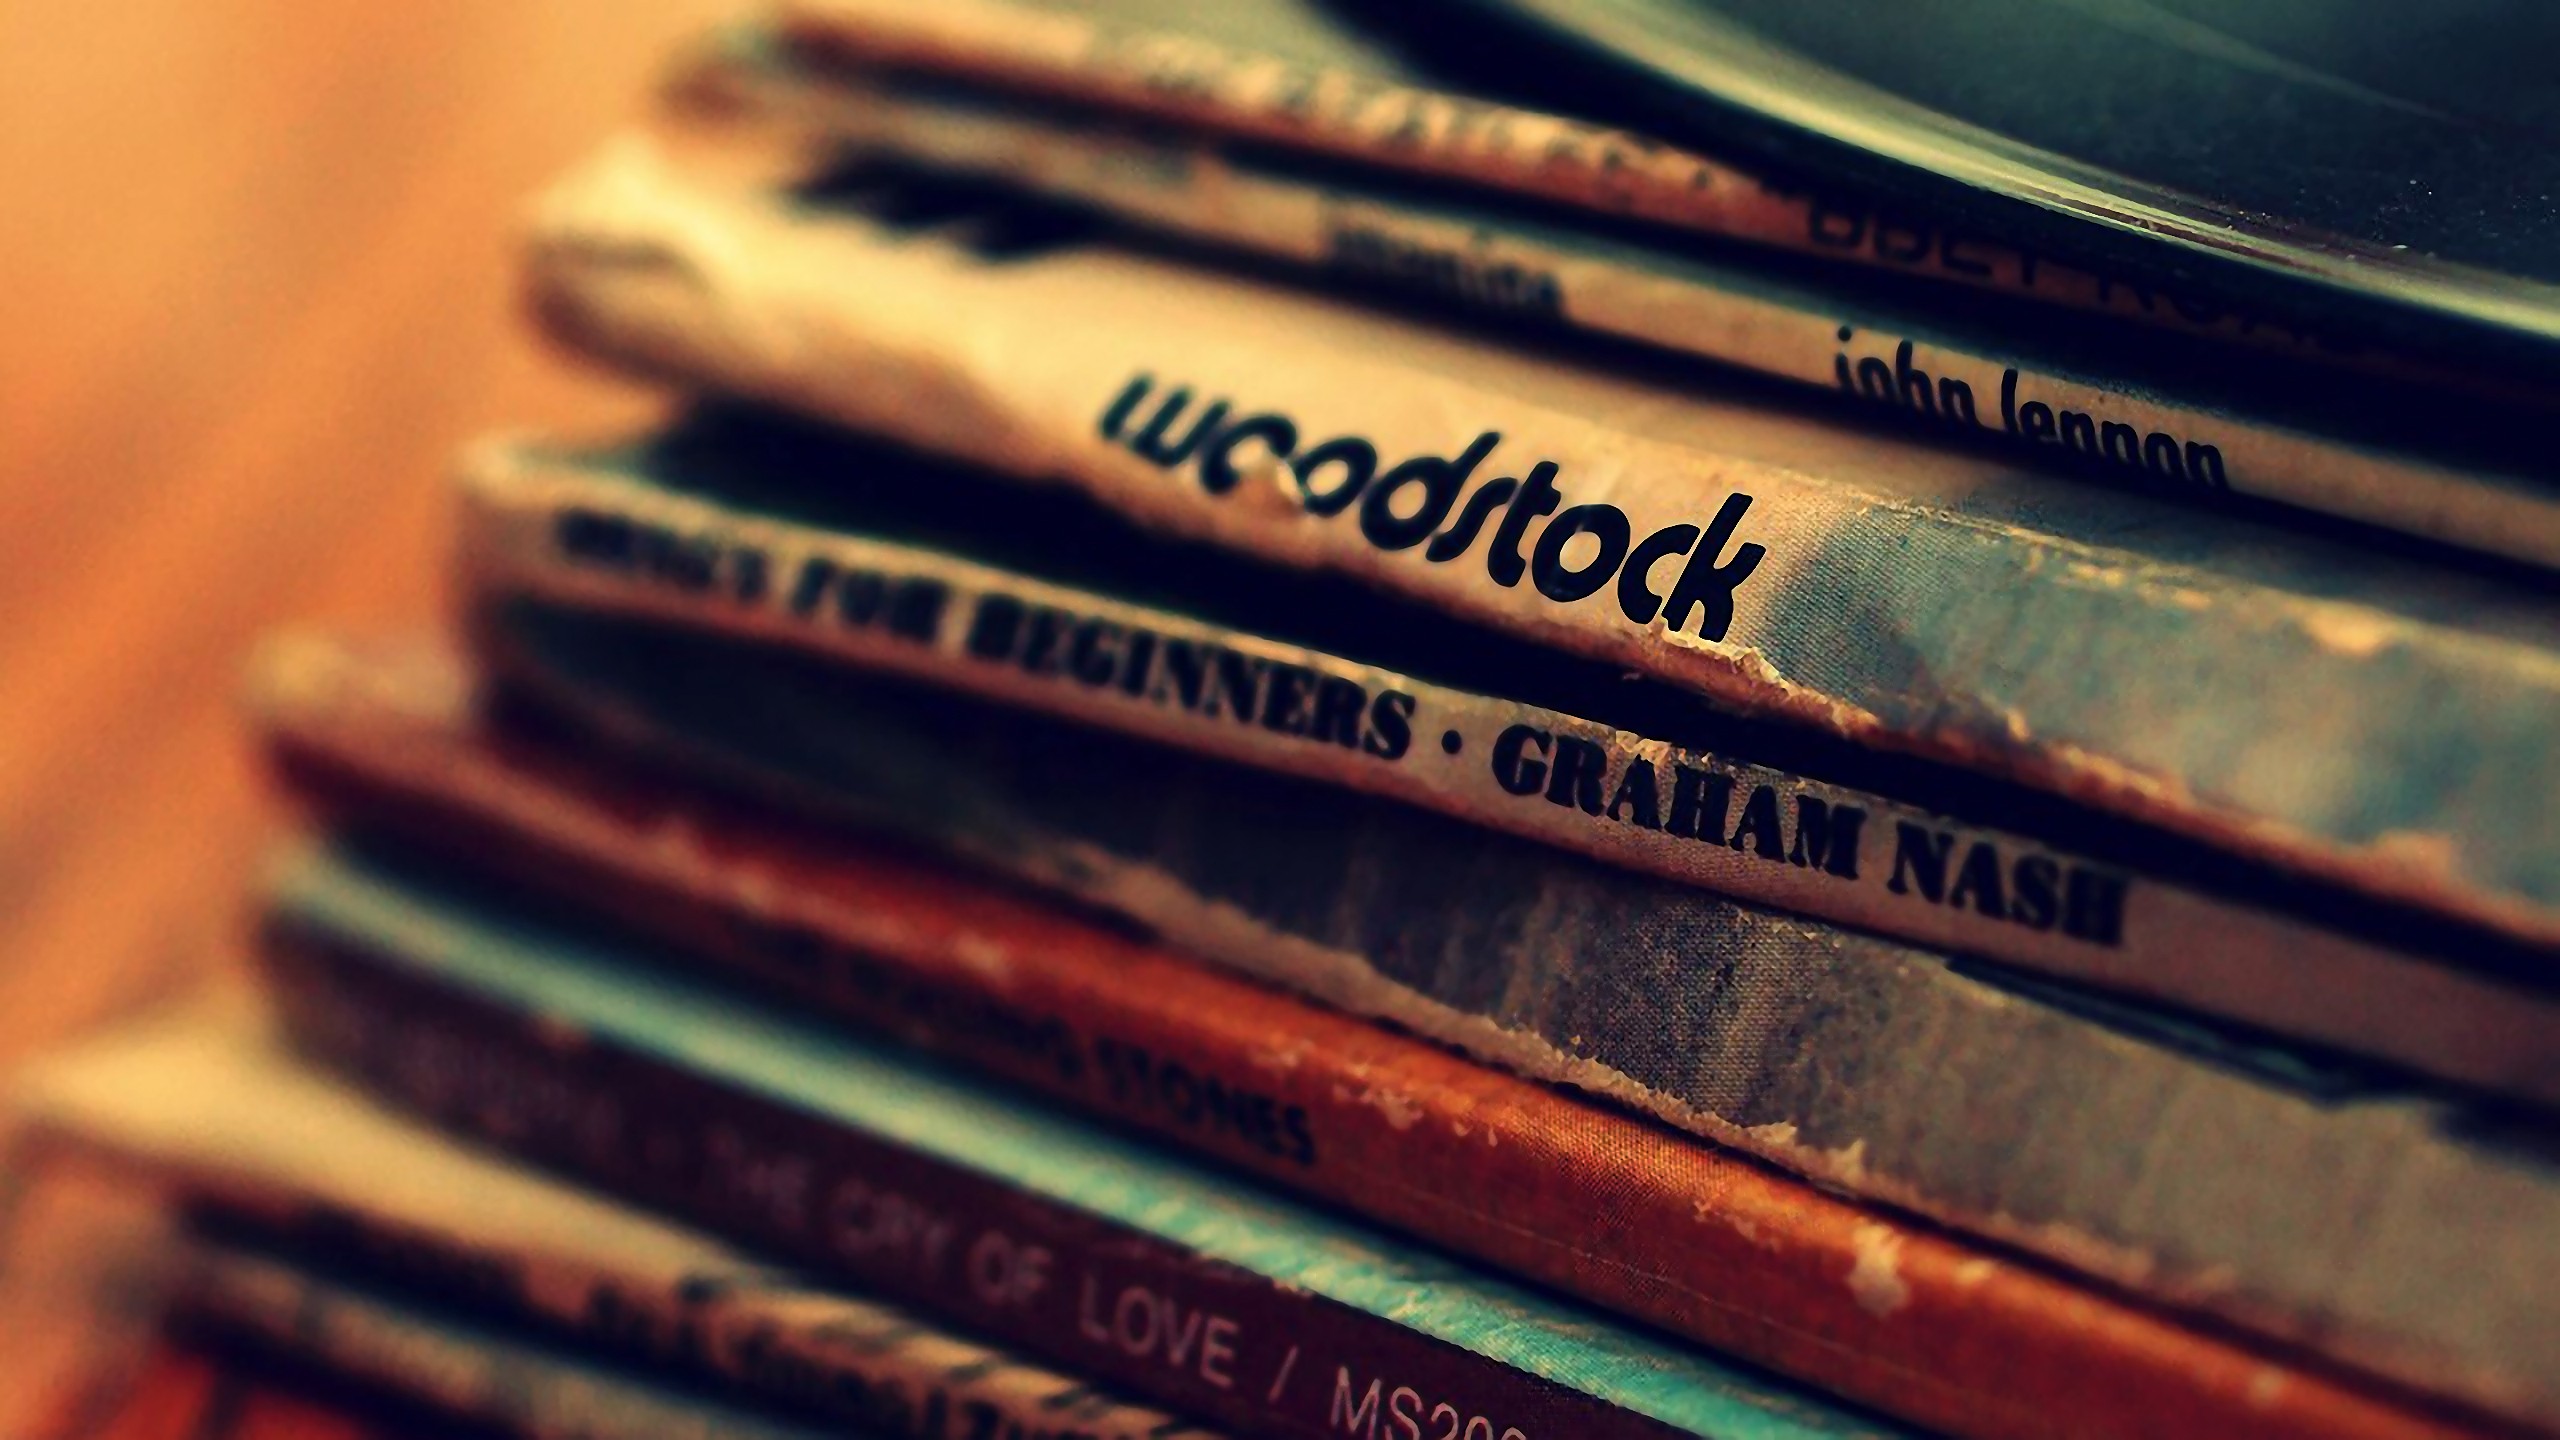 General 2560x1440 music album covers vinyl Woodstock Graham Nash John Lennon old